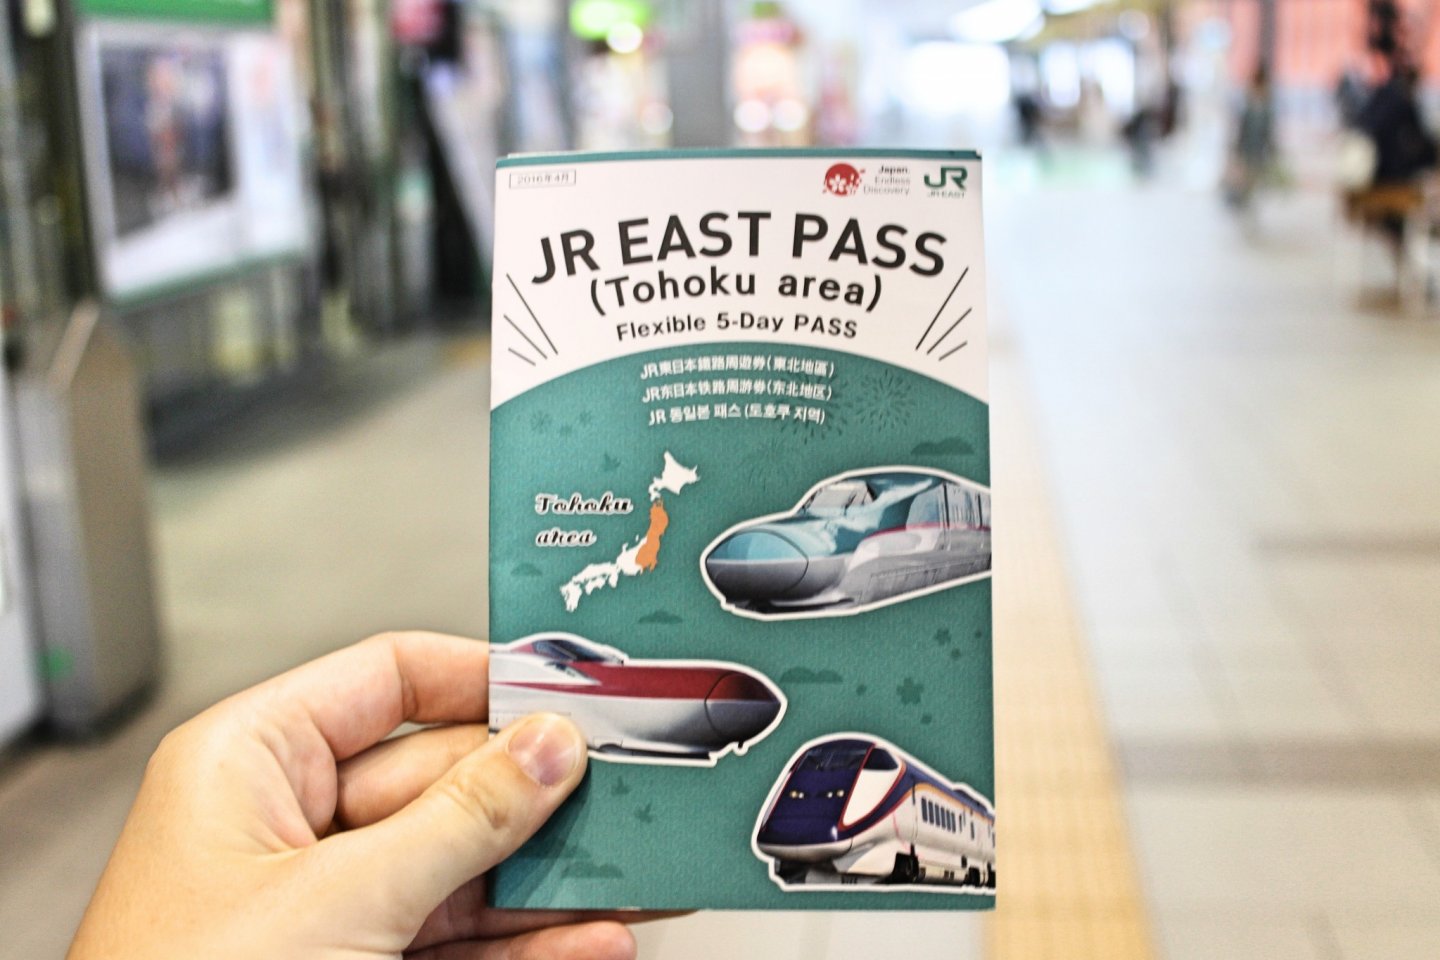 Một trong những loại vé bạn có thể mua là "JR East Pass" (khoảng 150 USD hoặc 20.000 yên), nó mang lại cho bạn 5 ngày di chuyển trên tất cả các chuyến tàu và Shinkansen trong khu vực Tohoku.